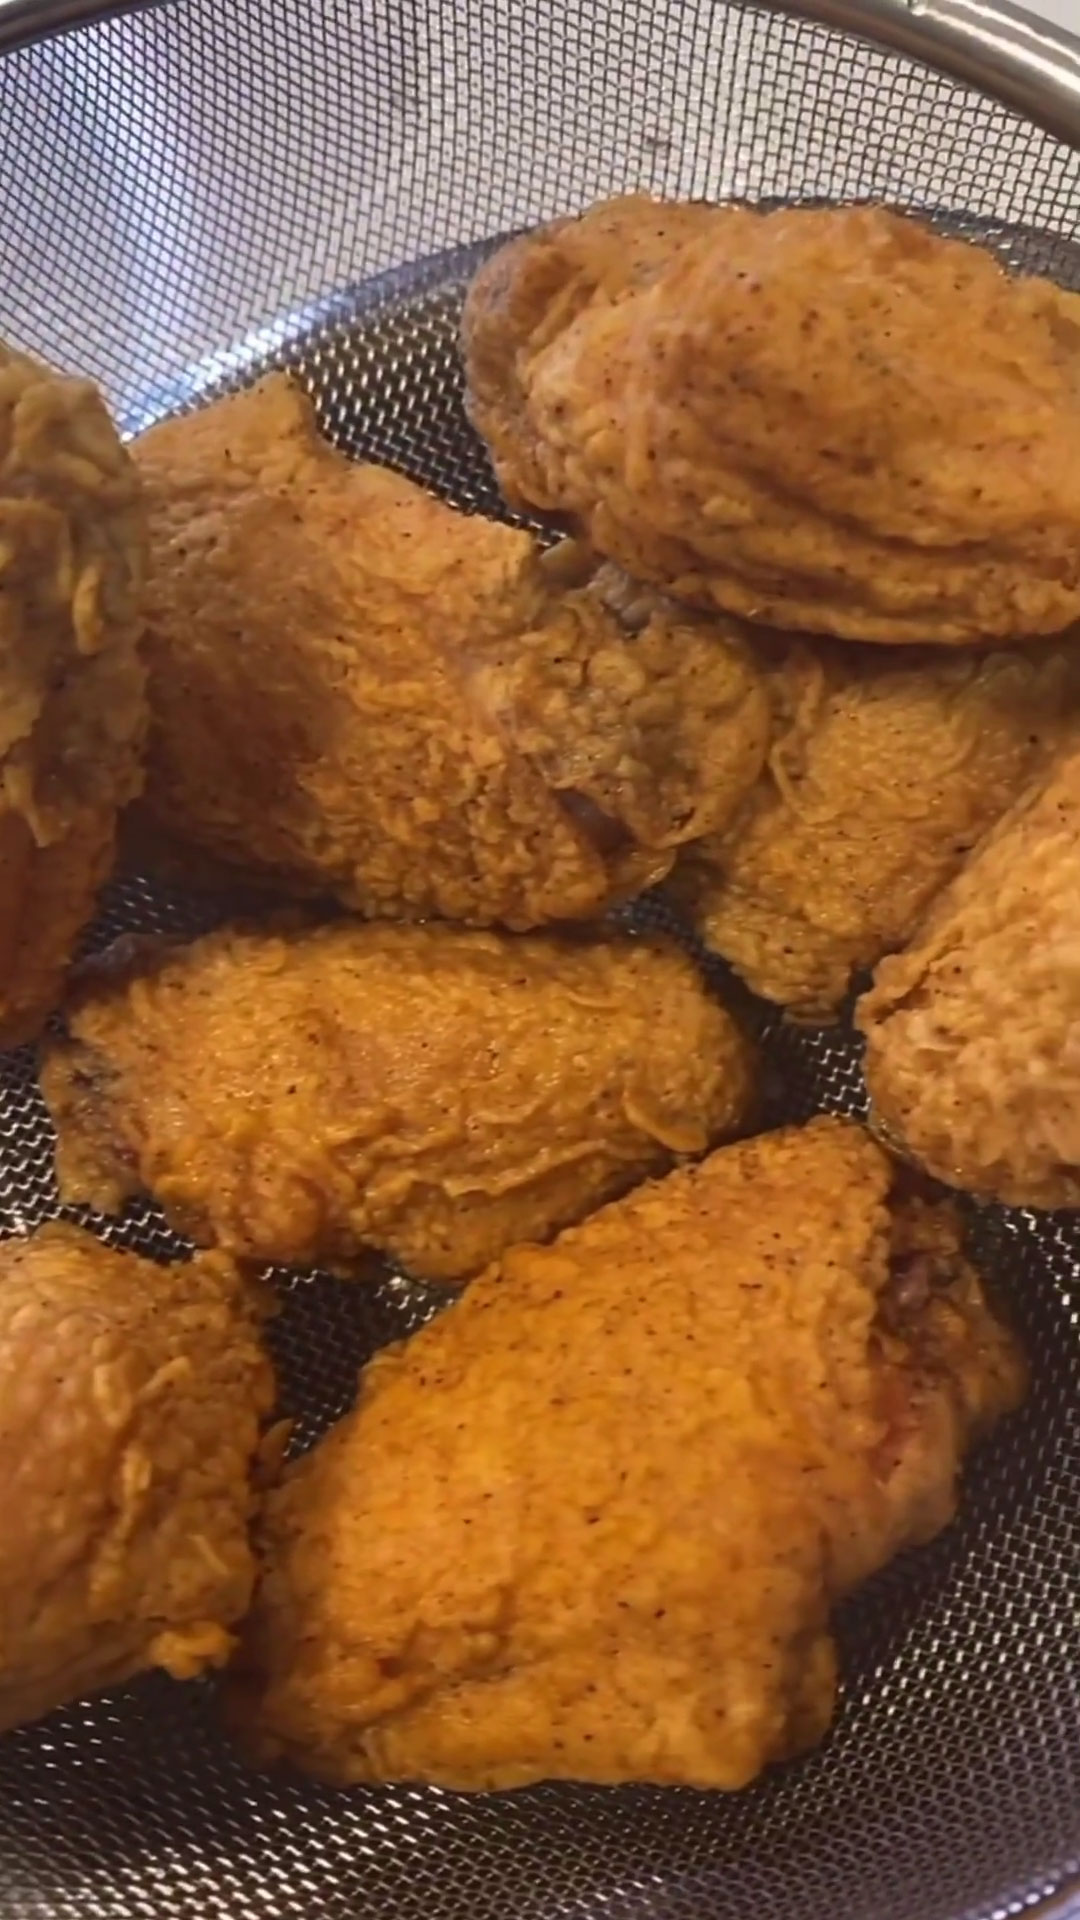 https://chefchrischo.com/wp-content/uploads/2023/02/fried_chicken_wings-1.jpg